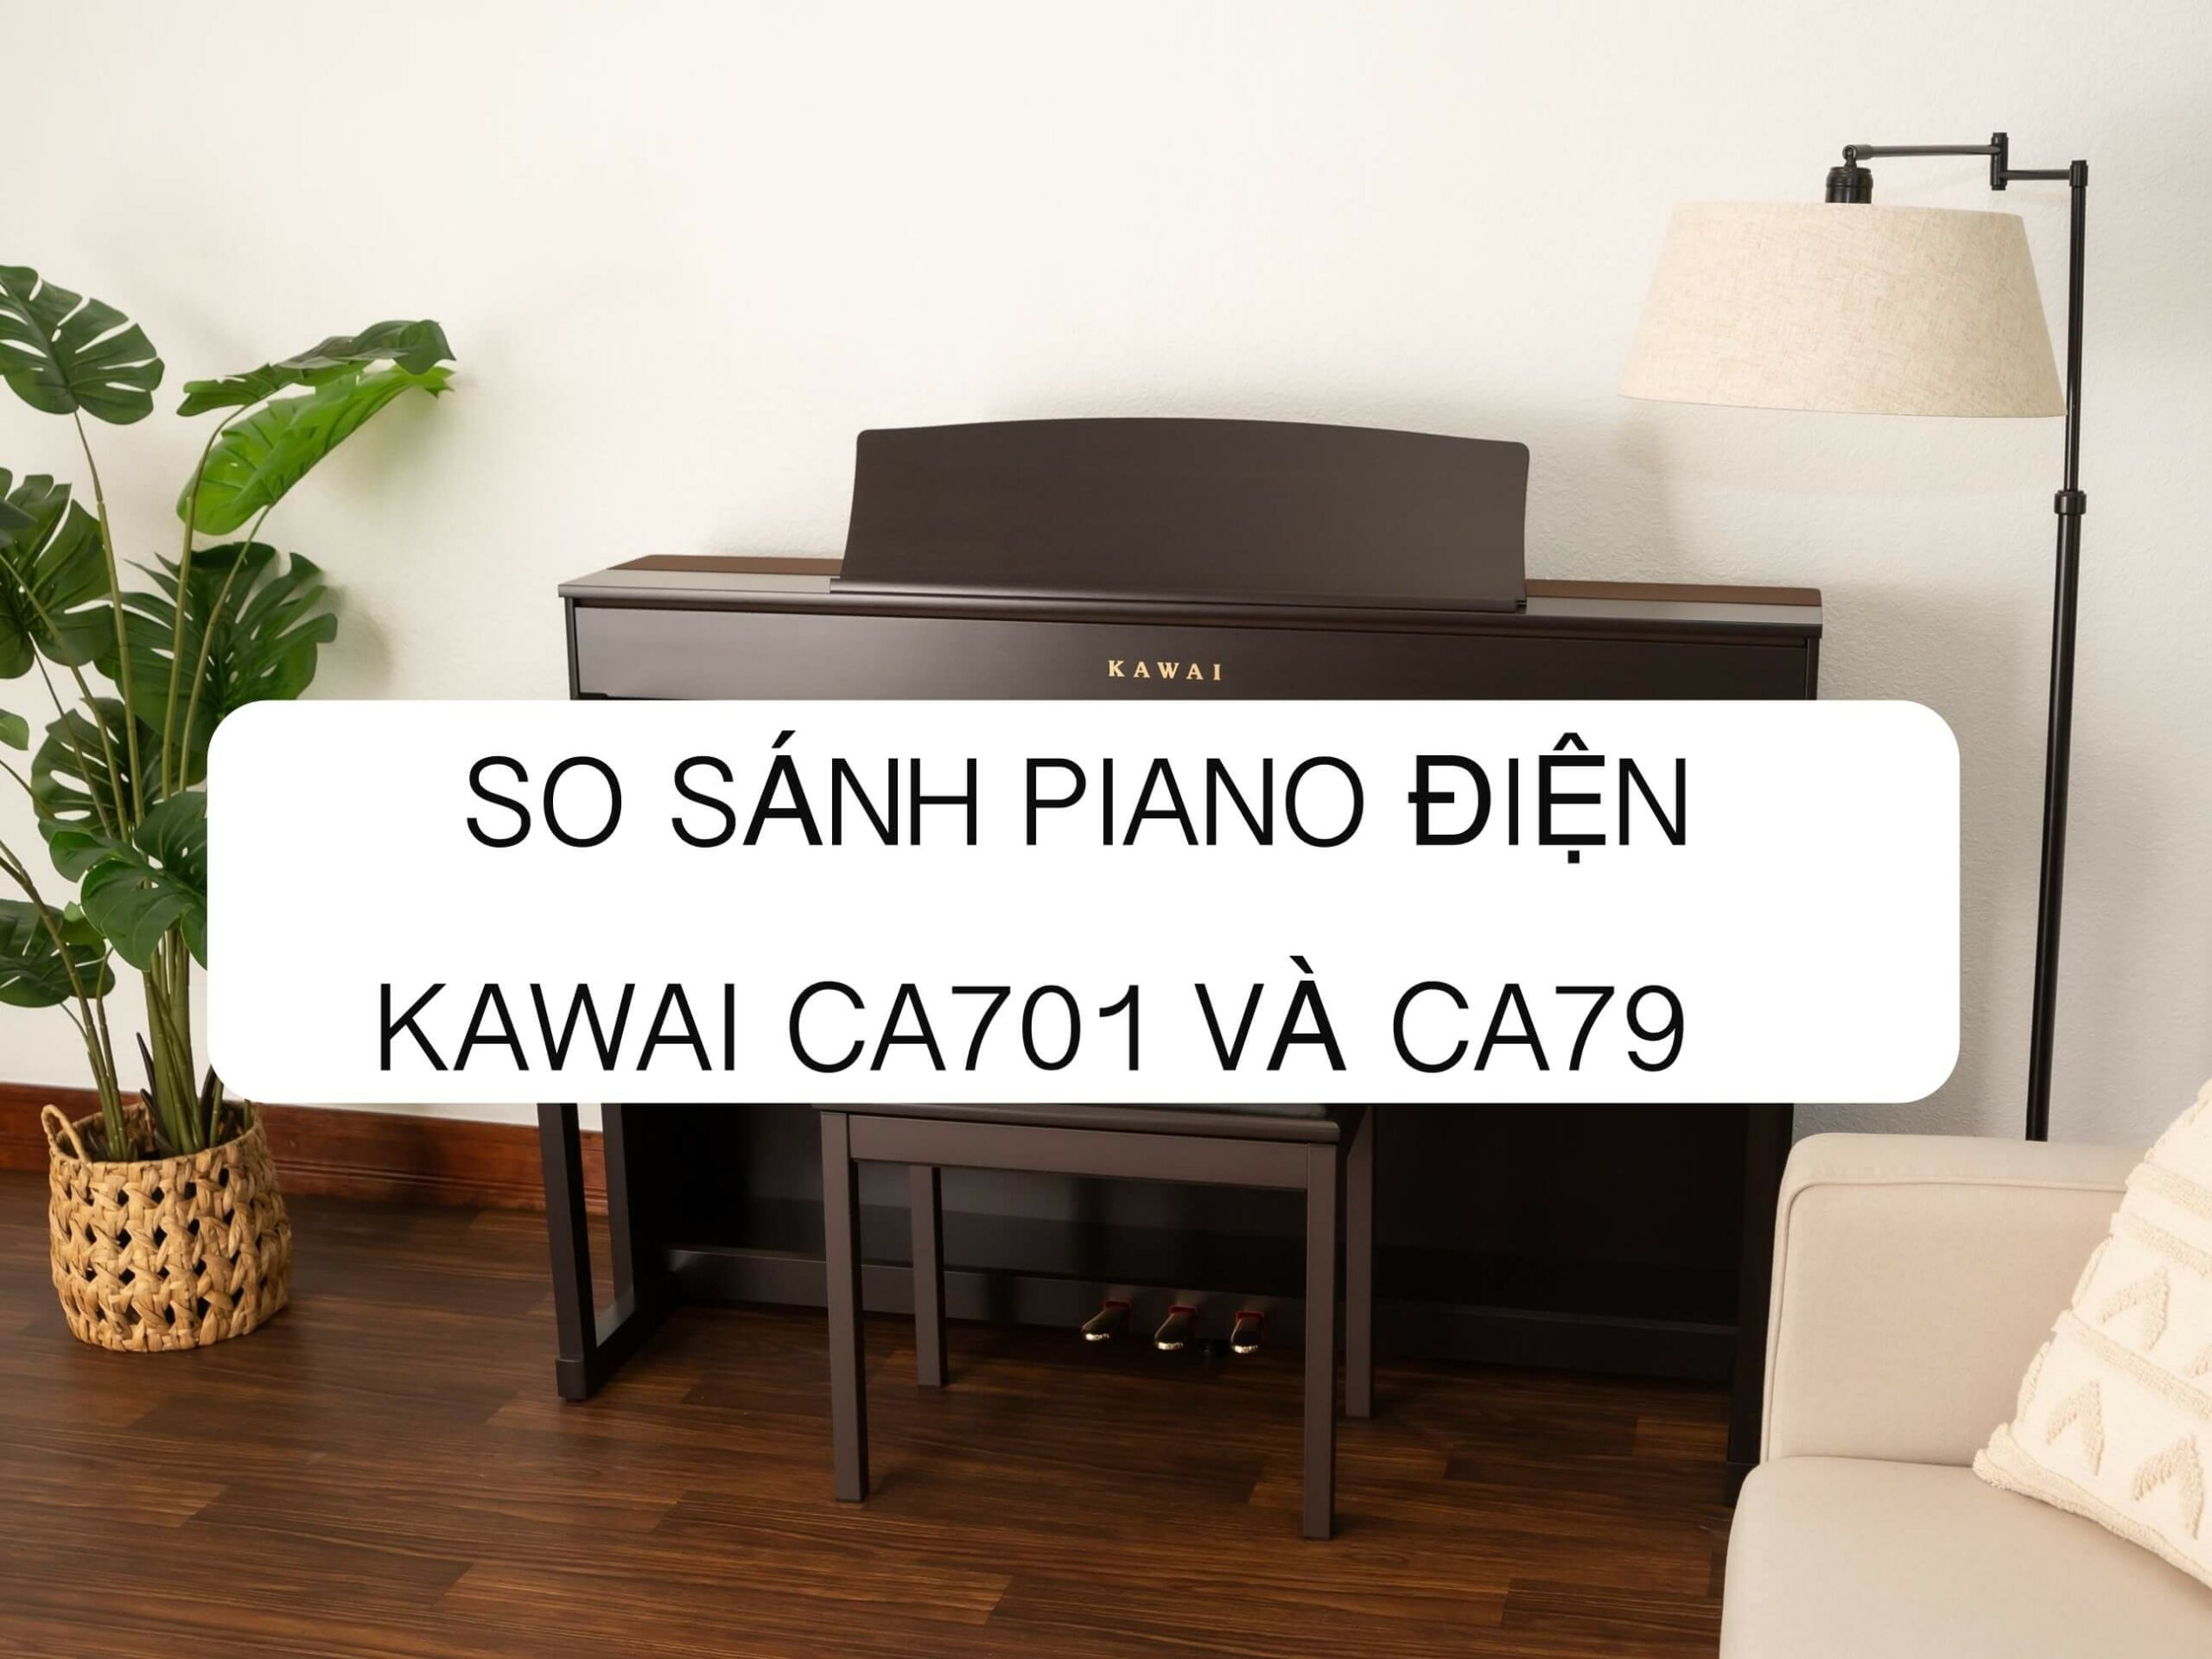 REVIEW SO SÁNH PIANO ĐIỆN KAWAI CA701 VÀ KAWAI CA79